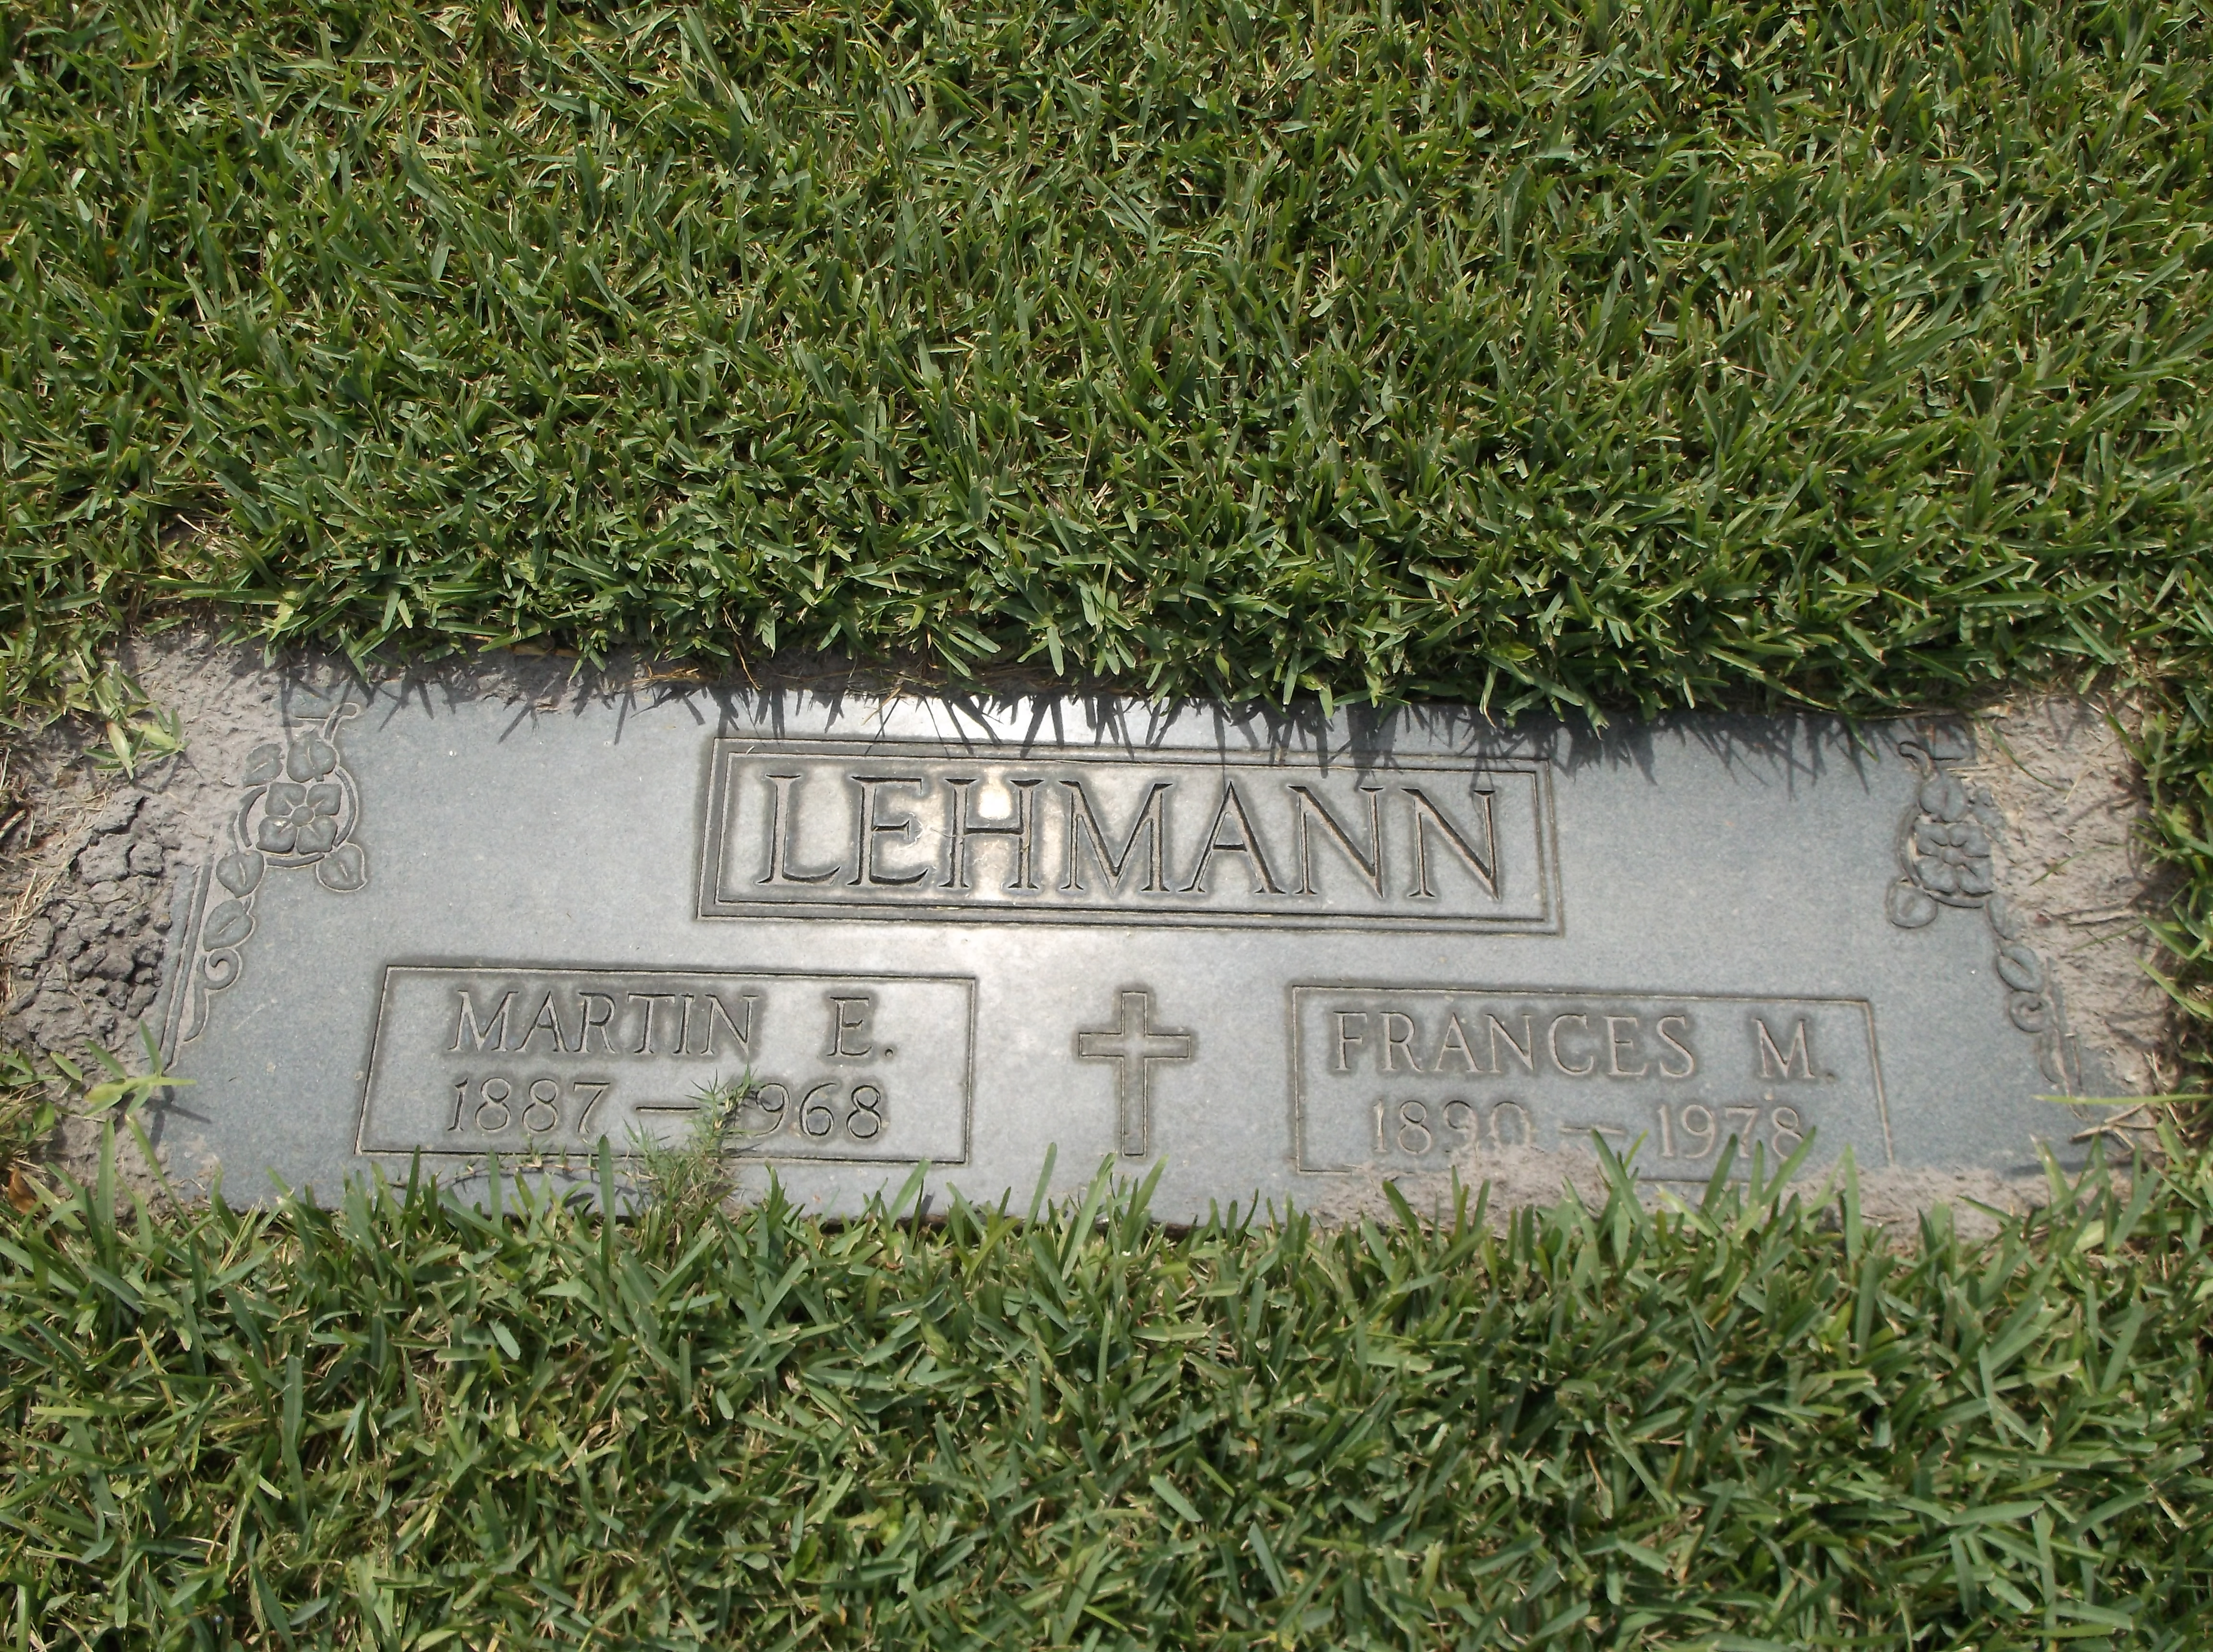 Martin E Lehmann